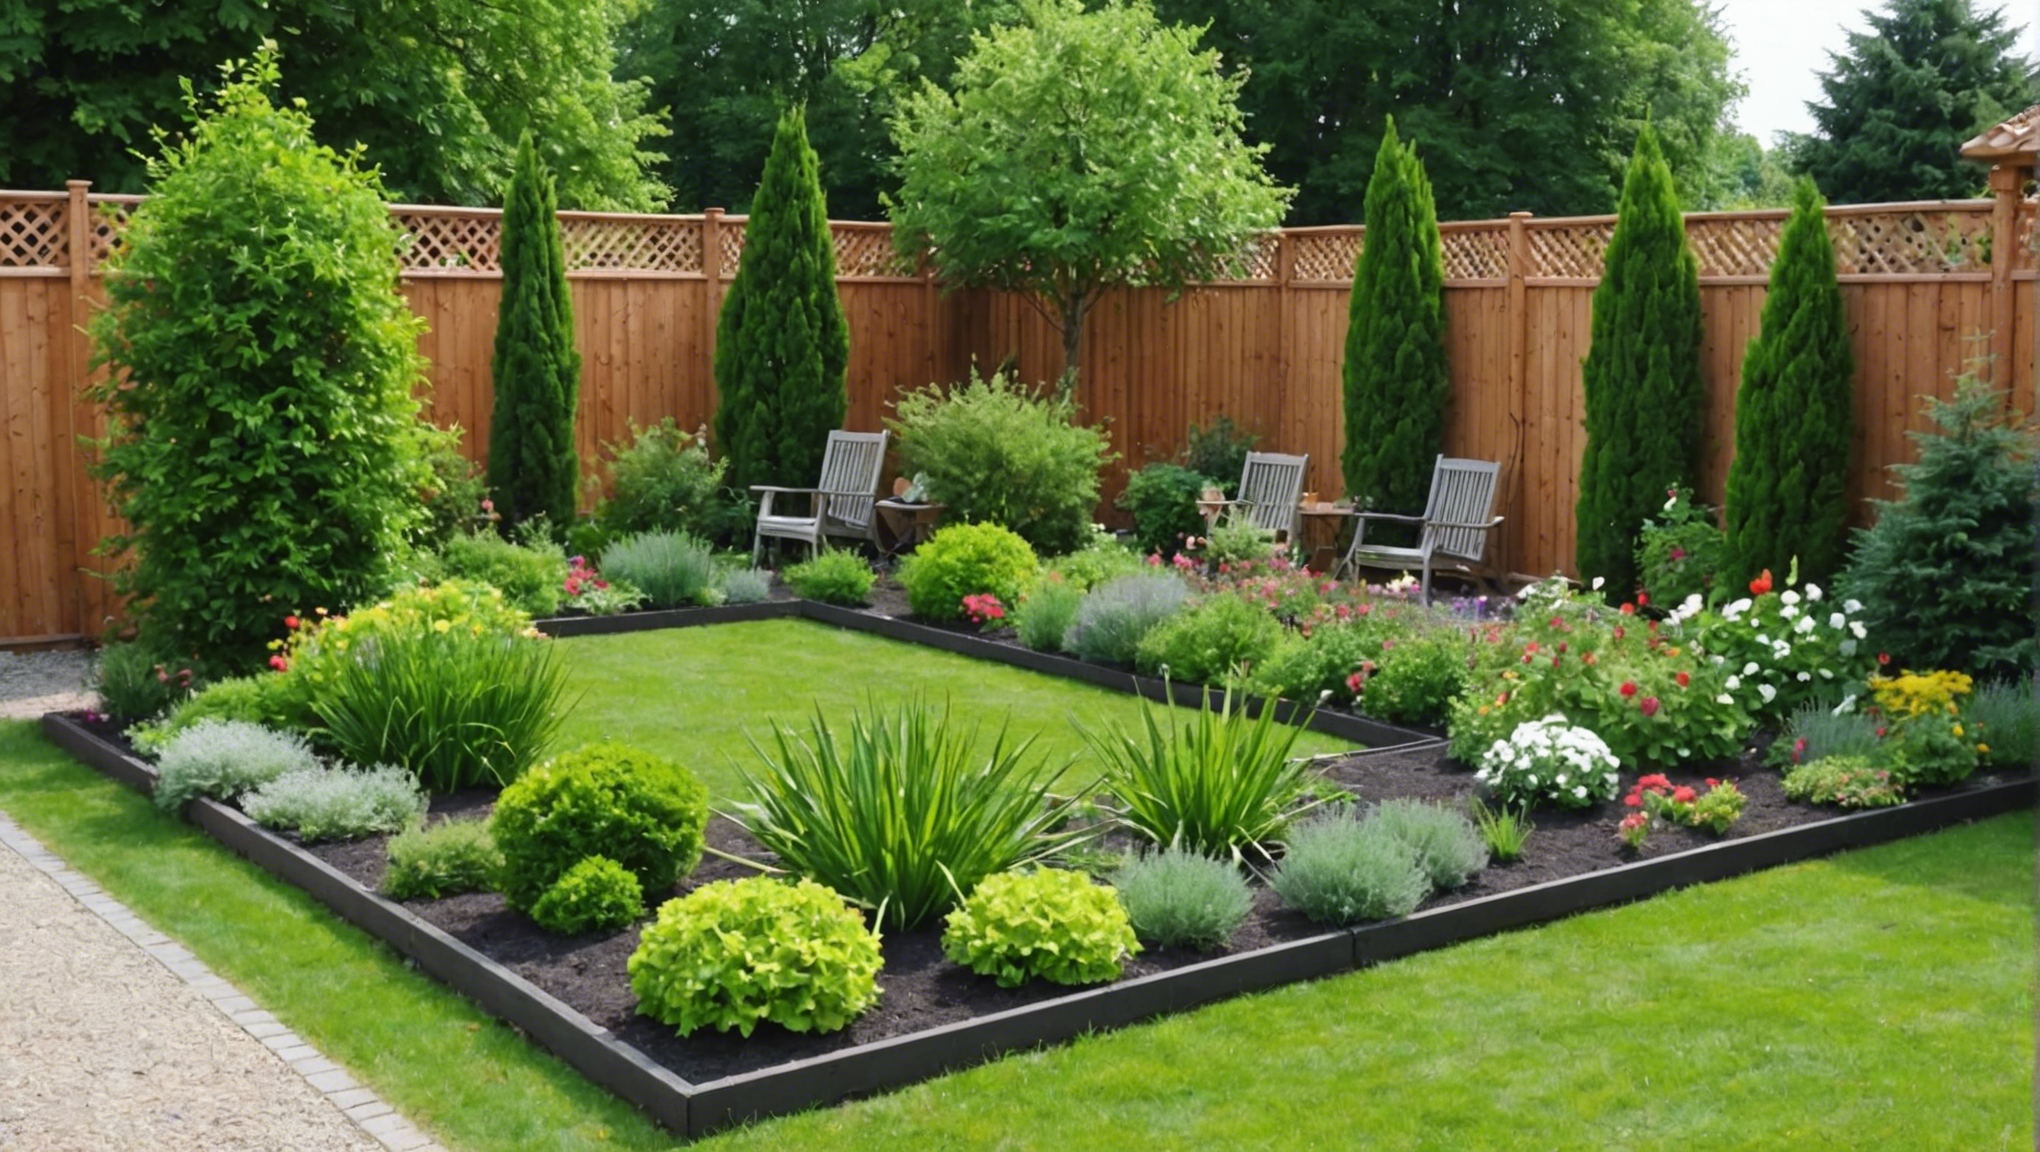 découvrez comment aménager simplement votre jardin pour en faire un lieu agréable et accueillant avec nos astuces et conseils pratiques.